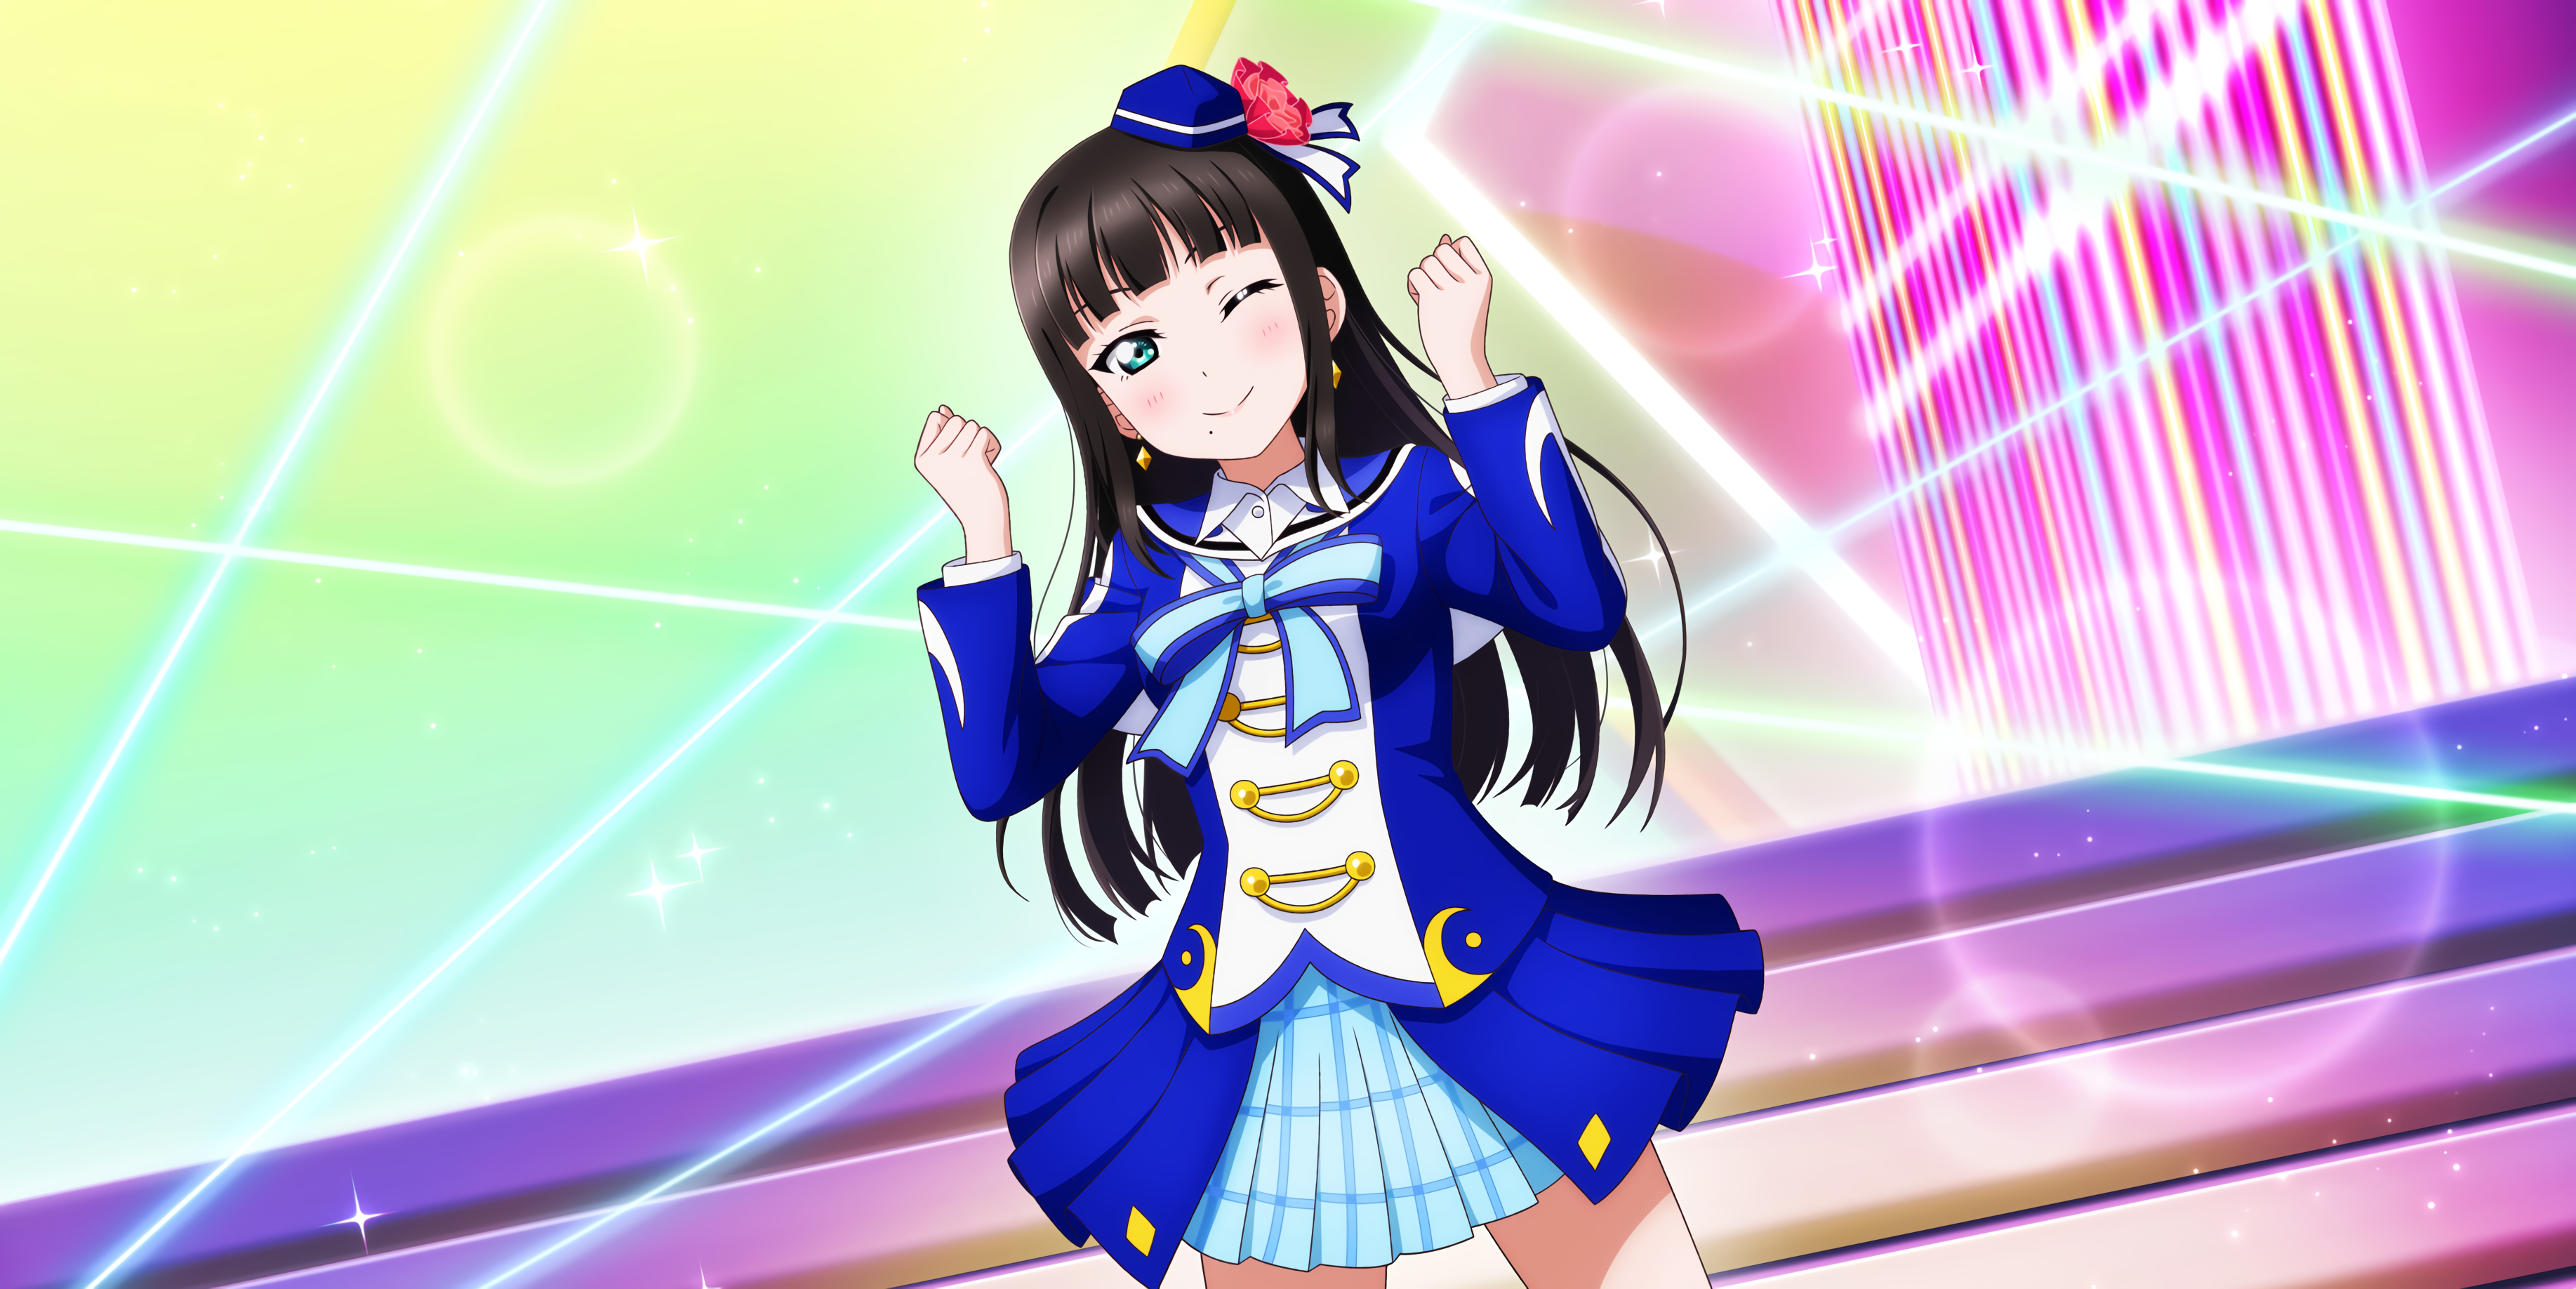 Kurosawa Dia Love Live Sunshine Anime Anime Girls Dark Hair Blue Eyes Wink Blushing Hat Long Hair 3670x1836